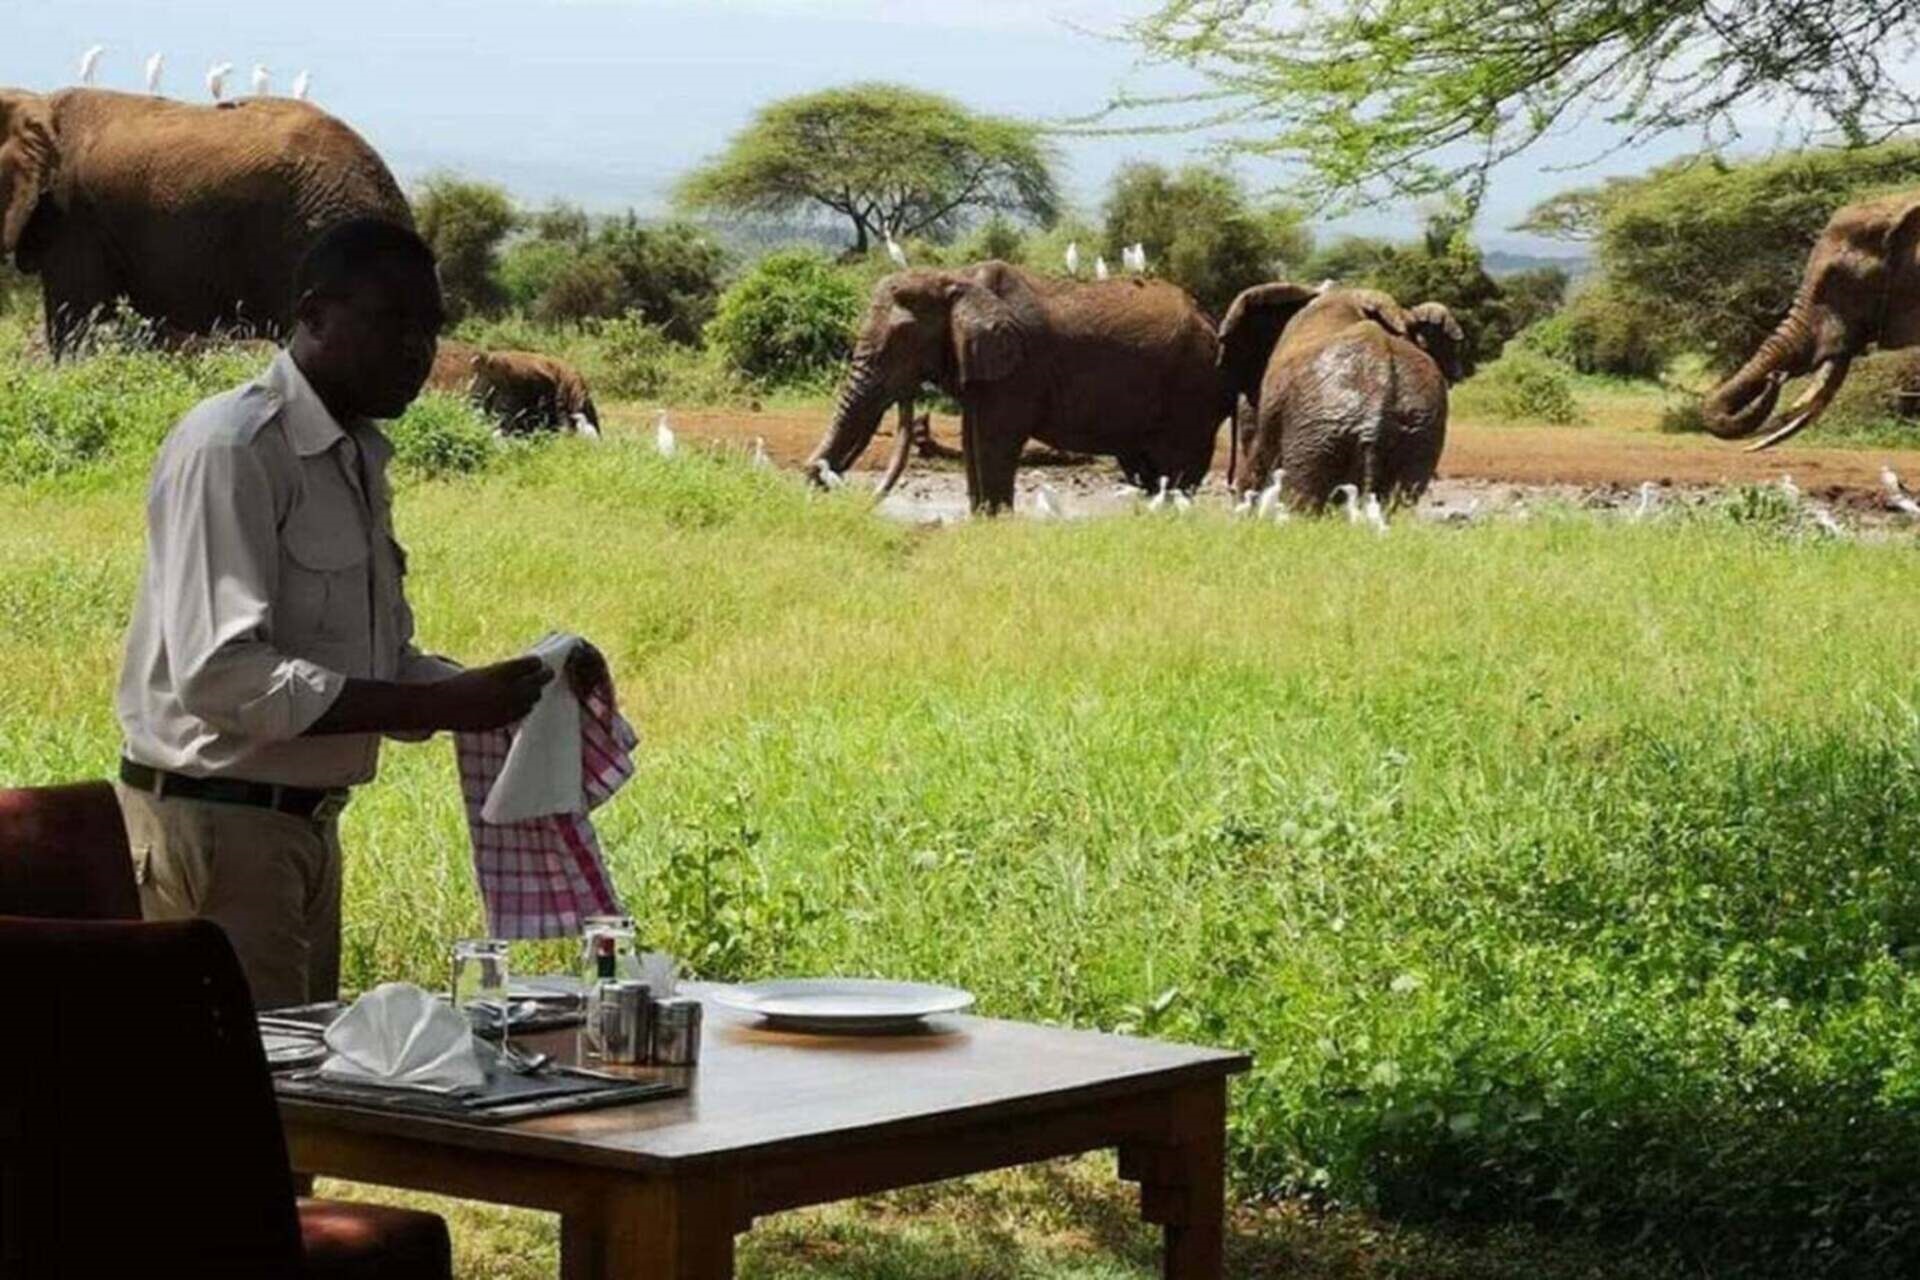 lunch direkt am wasserloch bei badenden elefanten